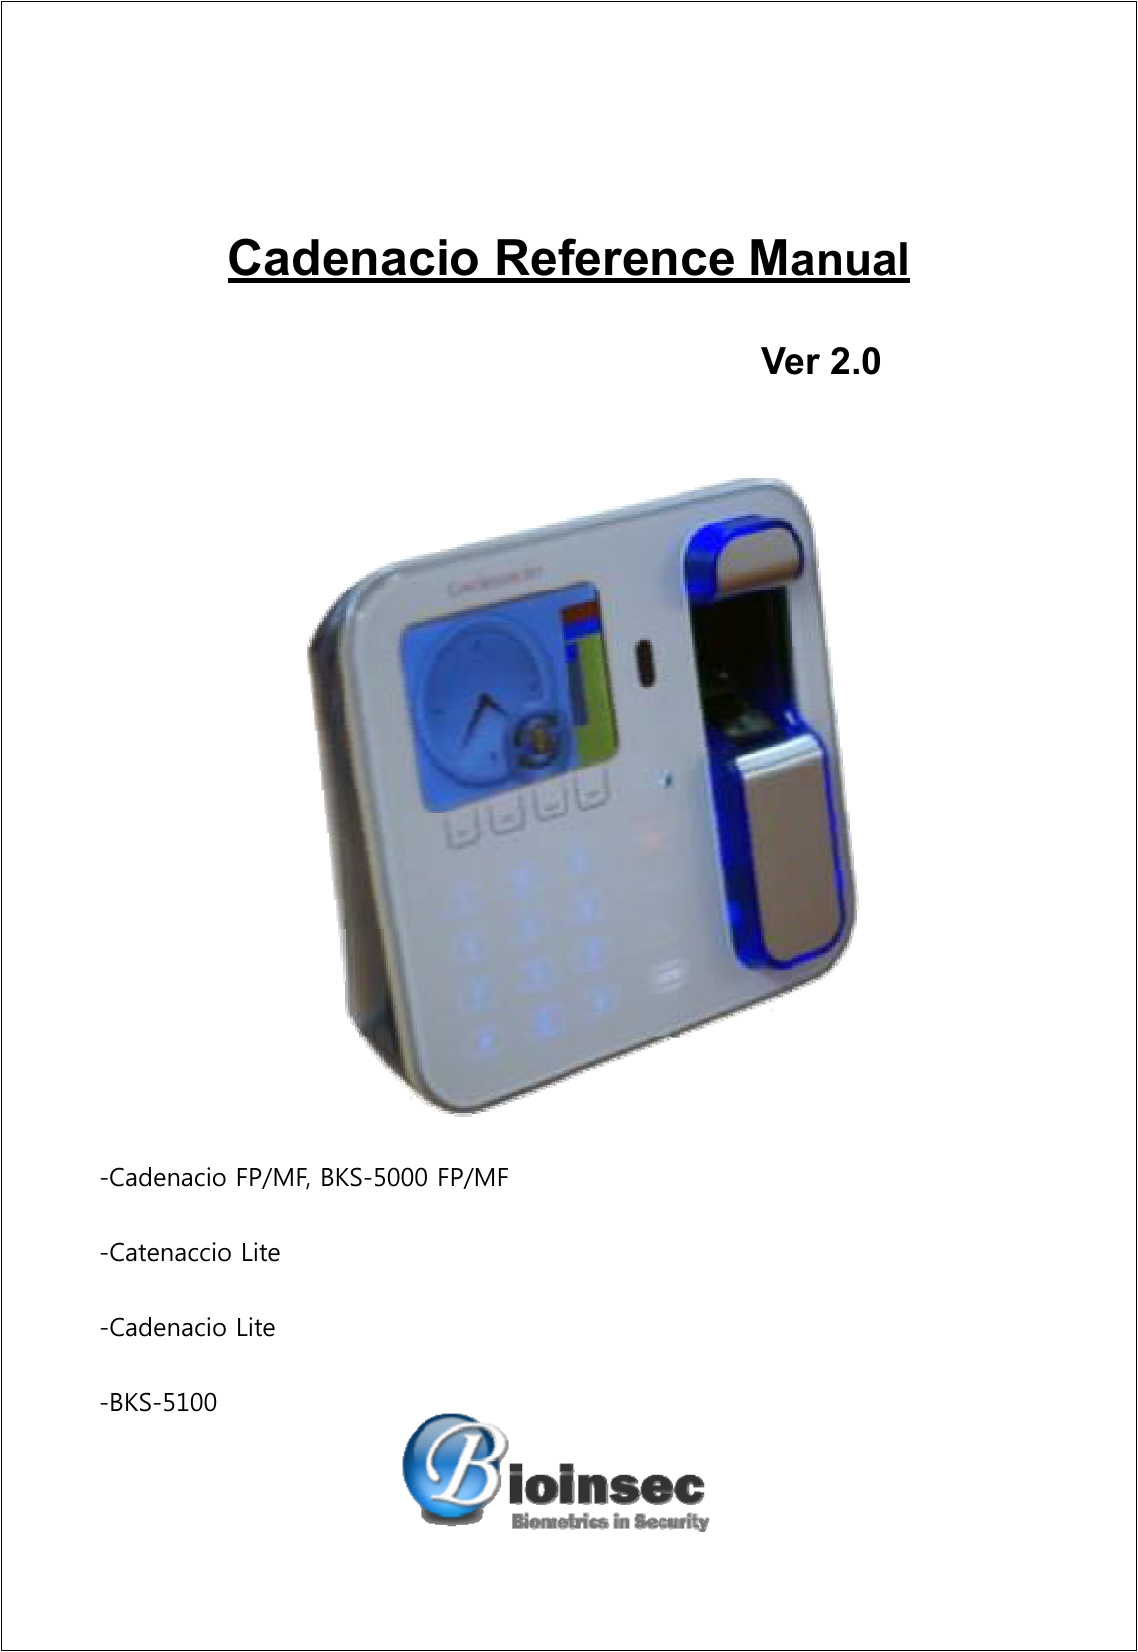   Cadenacio Reference Manual      -Cadenacio FP/MF, BKS-5000 FP/MF -Catenaccio Lite -Cadenacio Lite -BKS-5100  Ver 2.0 